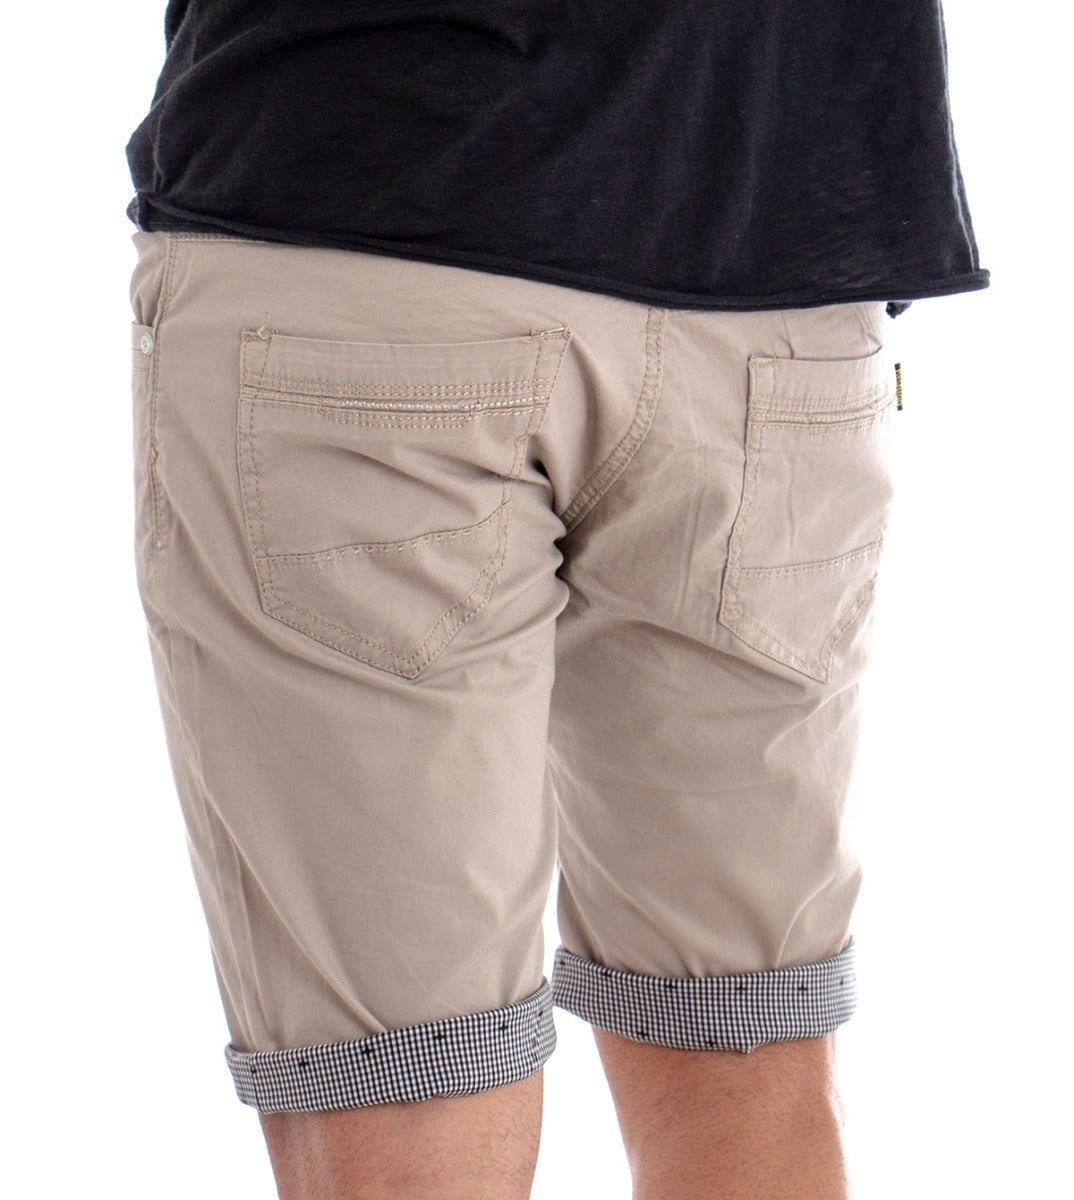 Bermuda Pantaloncino Uomo Corto Cotone Tinta Unita Beige Cinque Tasche Slim GIOSAL-PC1283A